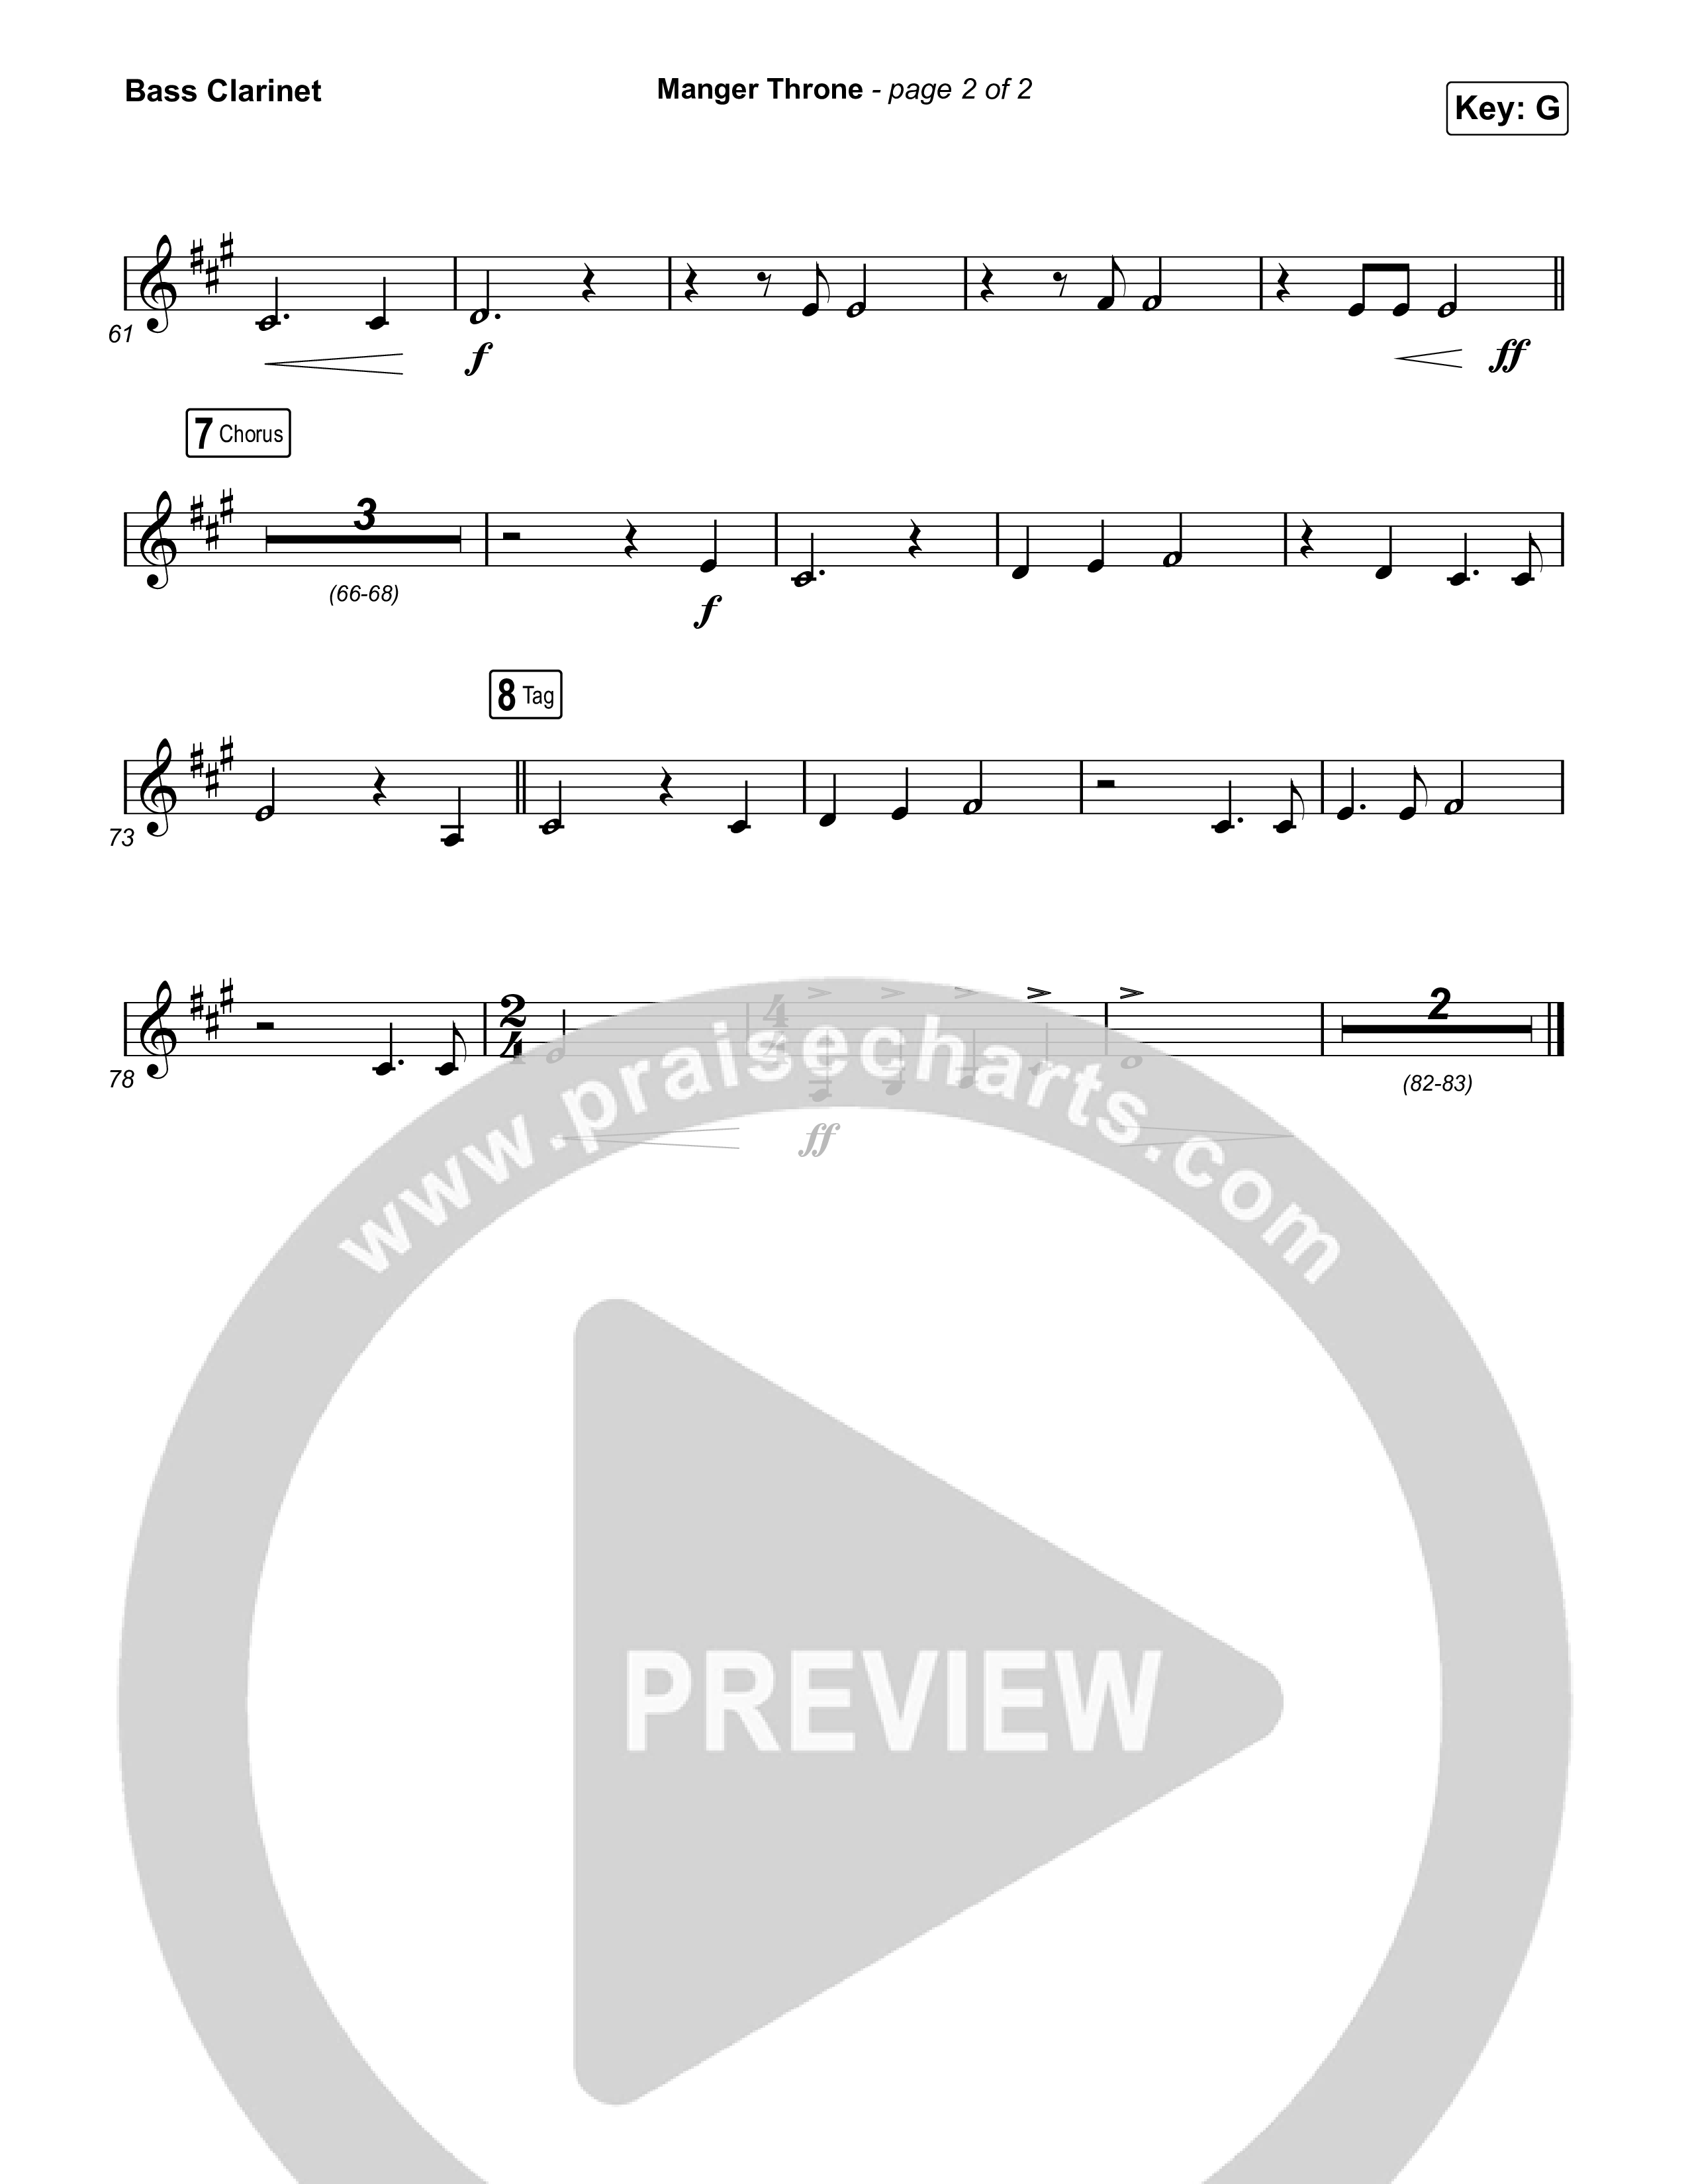 Manger Throne (Choral Anthem SATB) Bass Clarinet (Phil Wickham / Arr. Erik Foster)